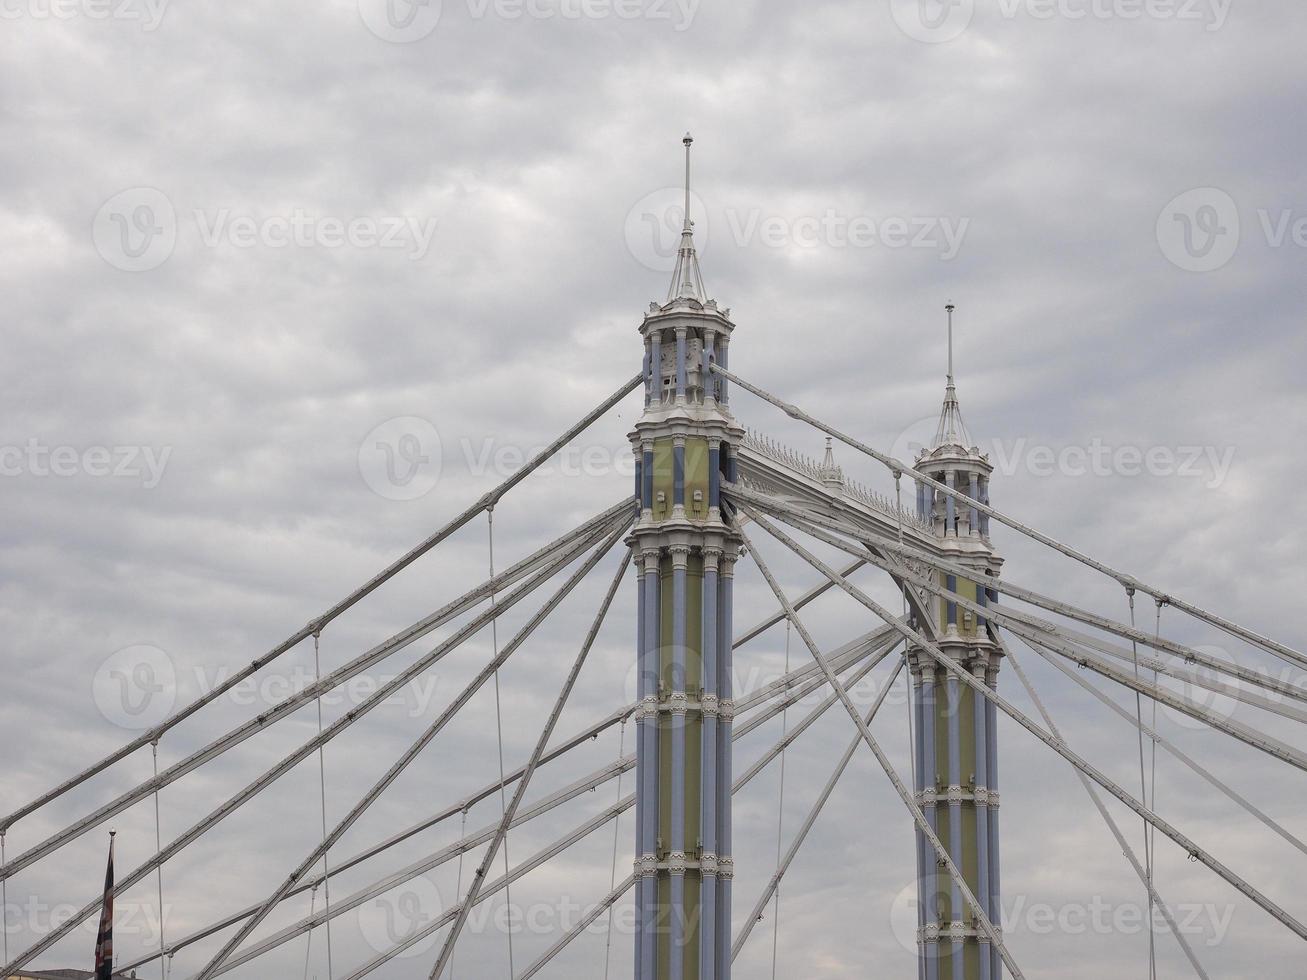 albert brug over de rivier de Theems in londen foto